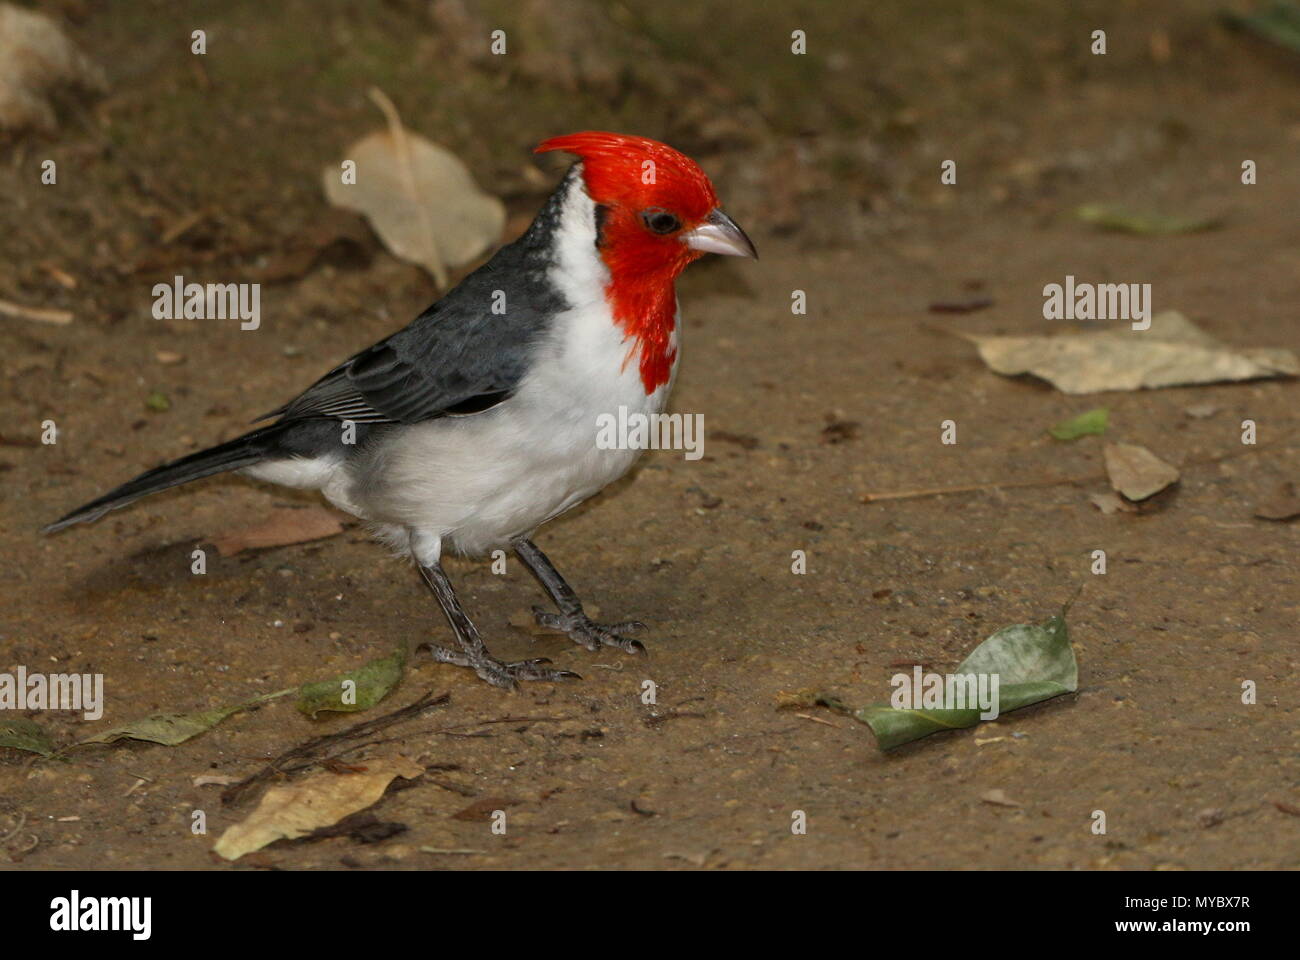 Sud America crestato rosso cardinale (Paroaria coronata) foraggio sul terreno. Foto Stock